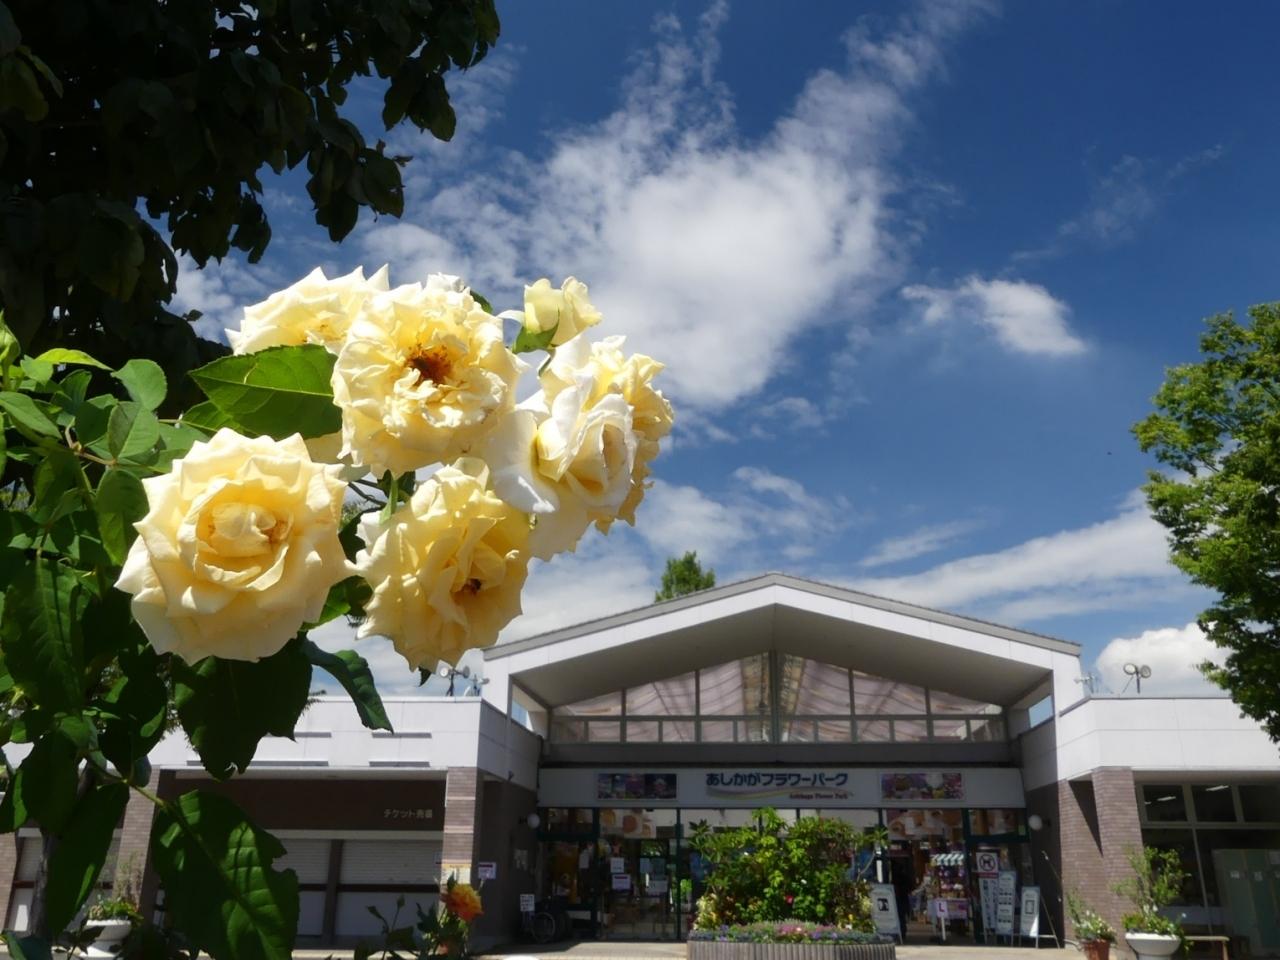 あしかがフラワーパーク の夏の花 21 バラが 思いの外 綺麗に咲いていました 栃木県 足利市 足利 栃木県 の旅行記 ブログ By Minamicazeさん フォートラベル